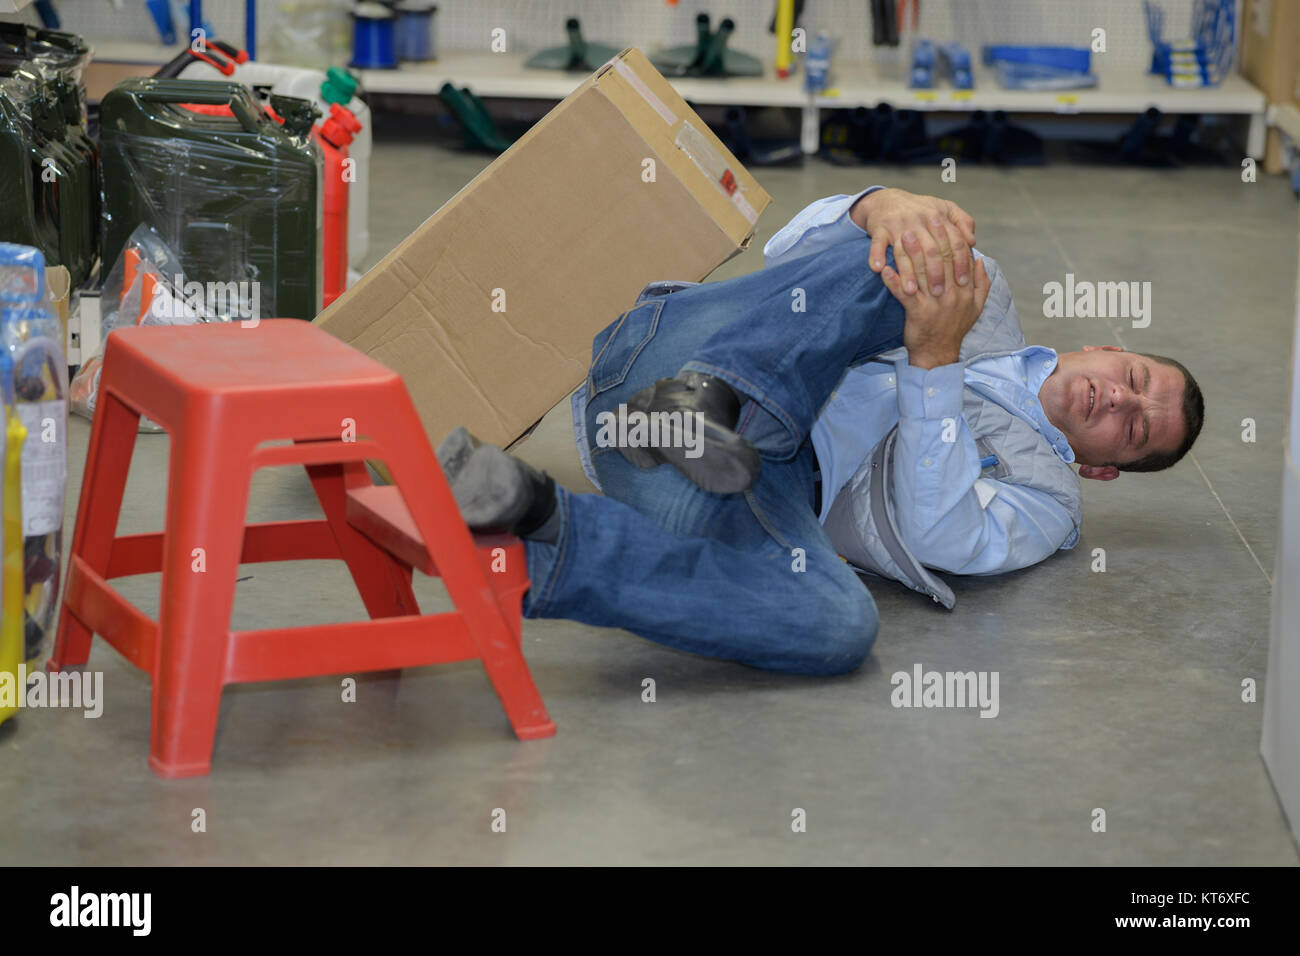 Mann Arbeiter mit knieverletzung Konzept der Unfall bei der Arbeit Stockfoto